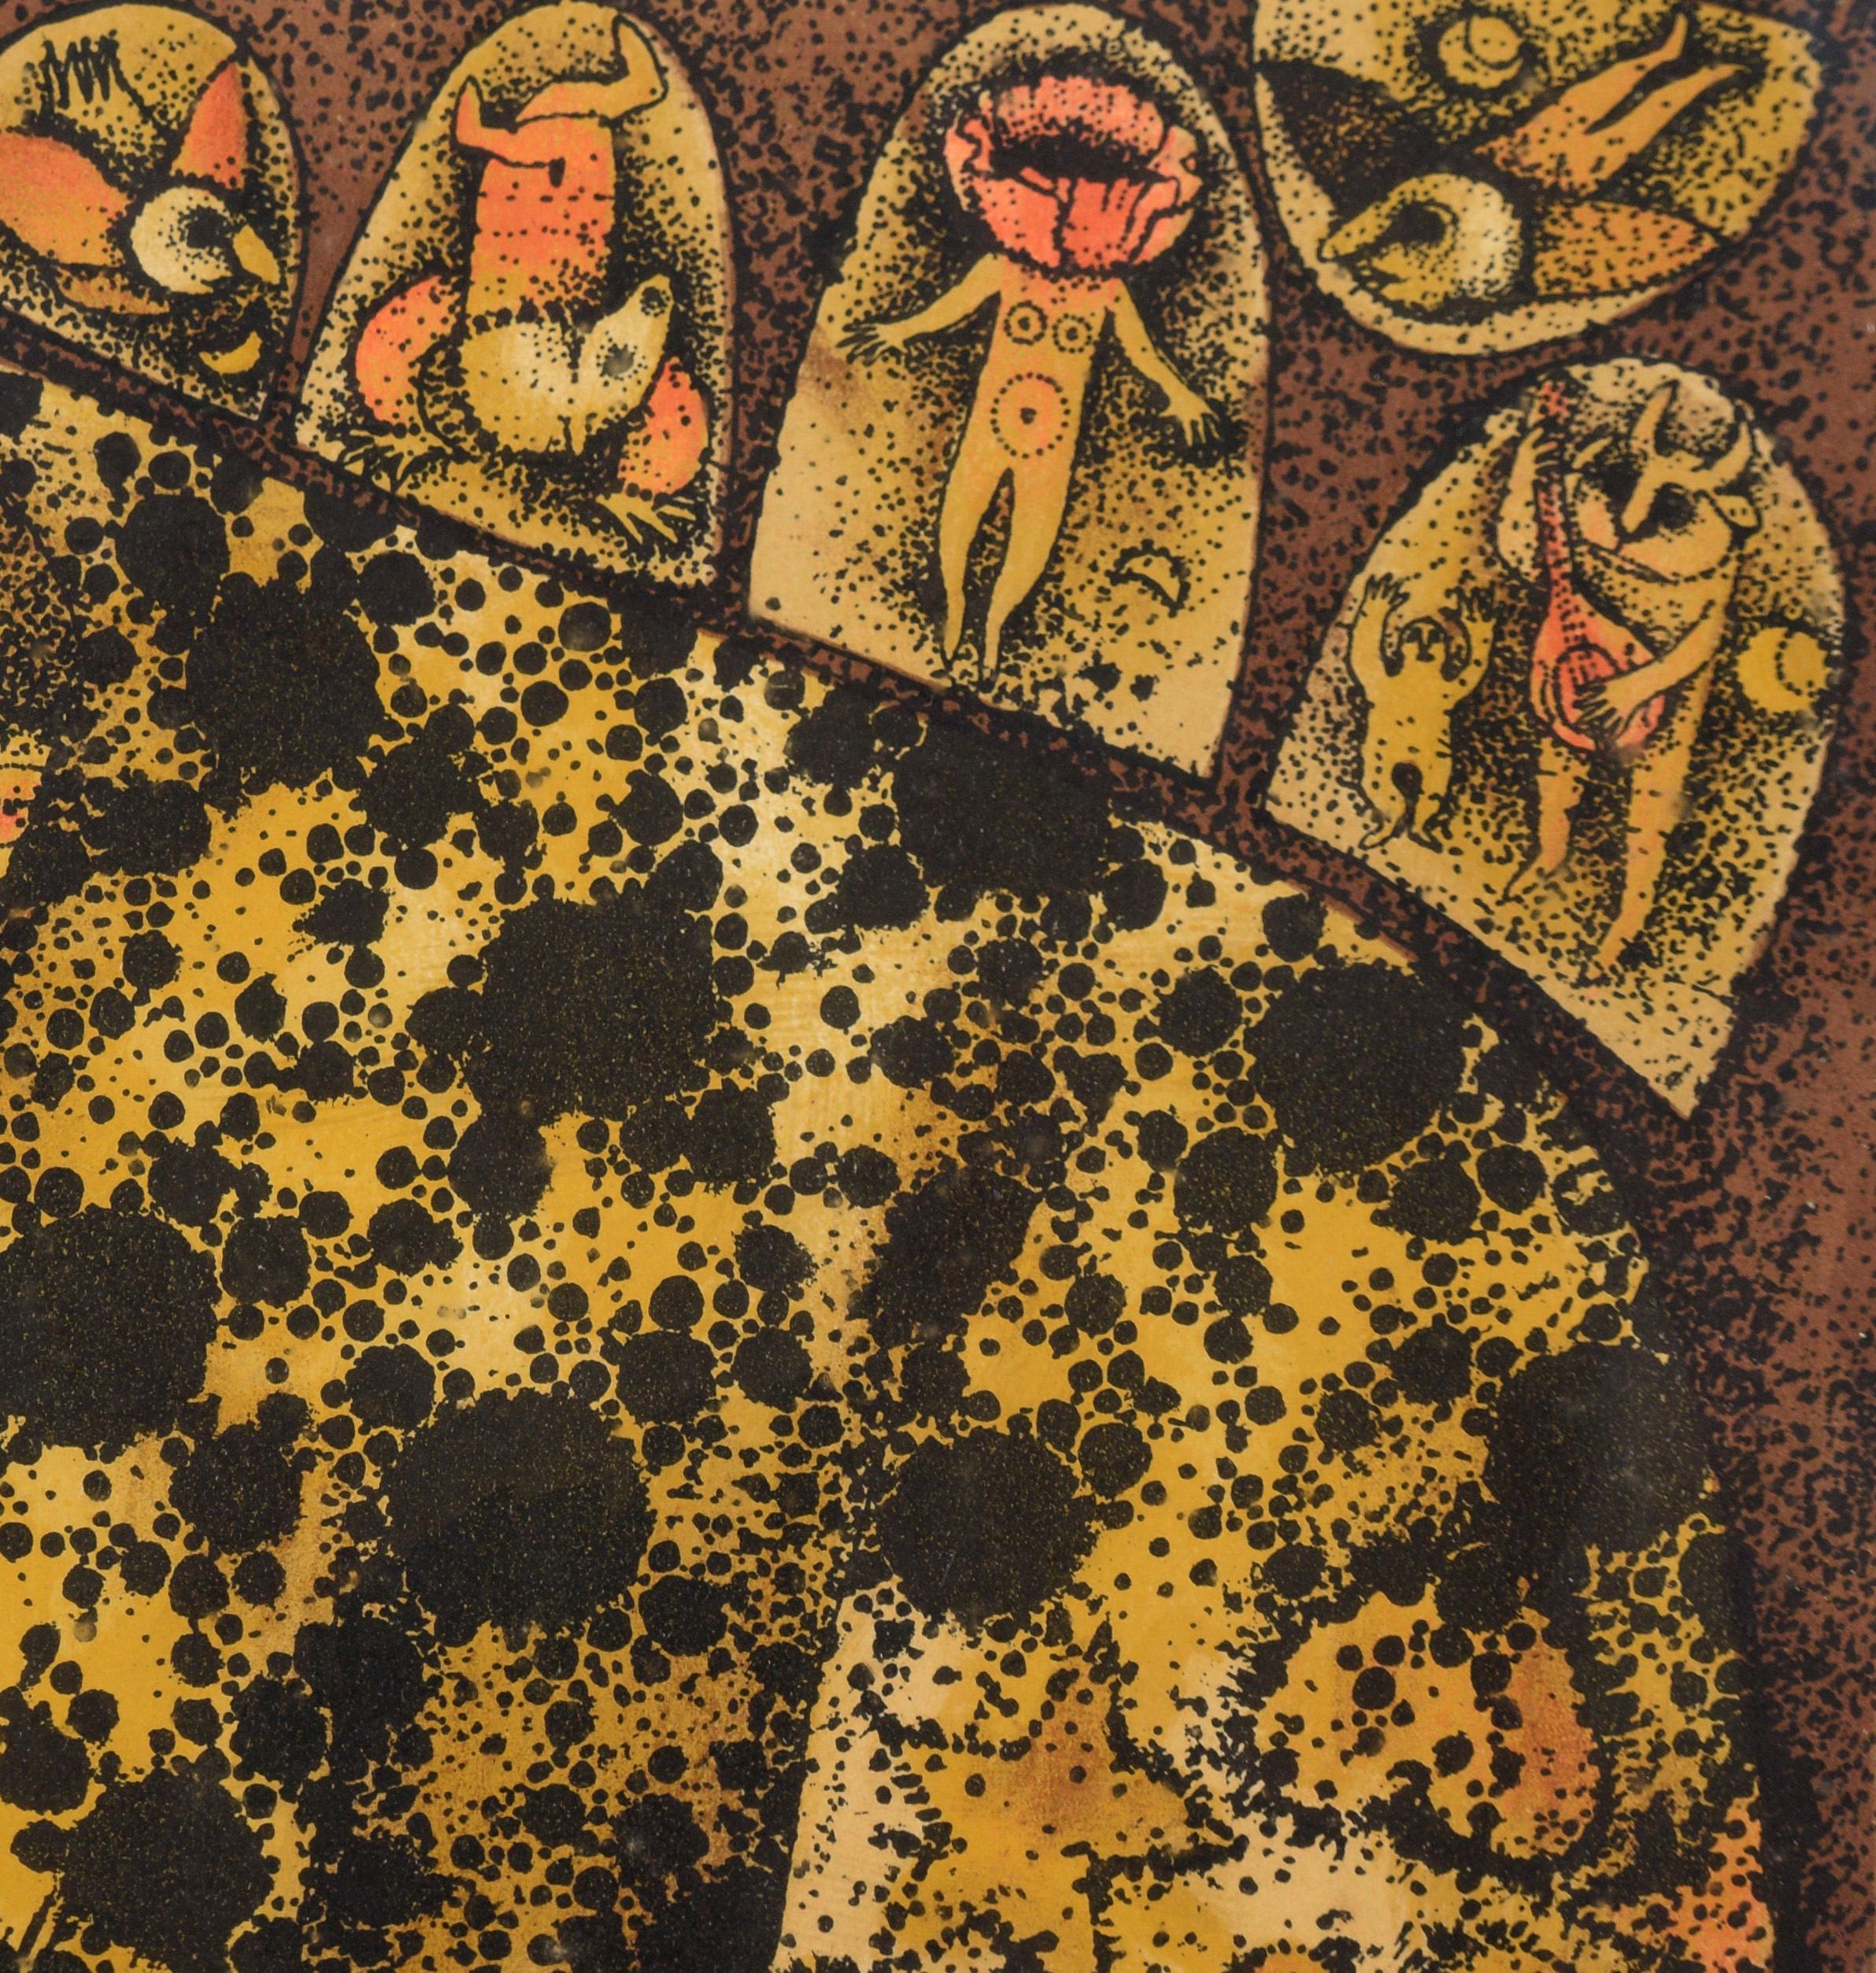 « Leopard Dreaming » - Lithographie fantastique à l'encre sur papier

Lithographie en gras d'un léopard par Carol Jablonsky (américaine, 1932-1992). Un léopard est représenté de manière fantastique et surréaliste, avec des symboles dans les zones